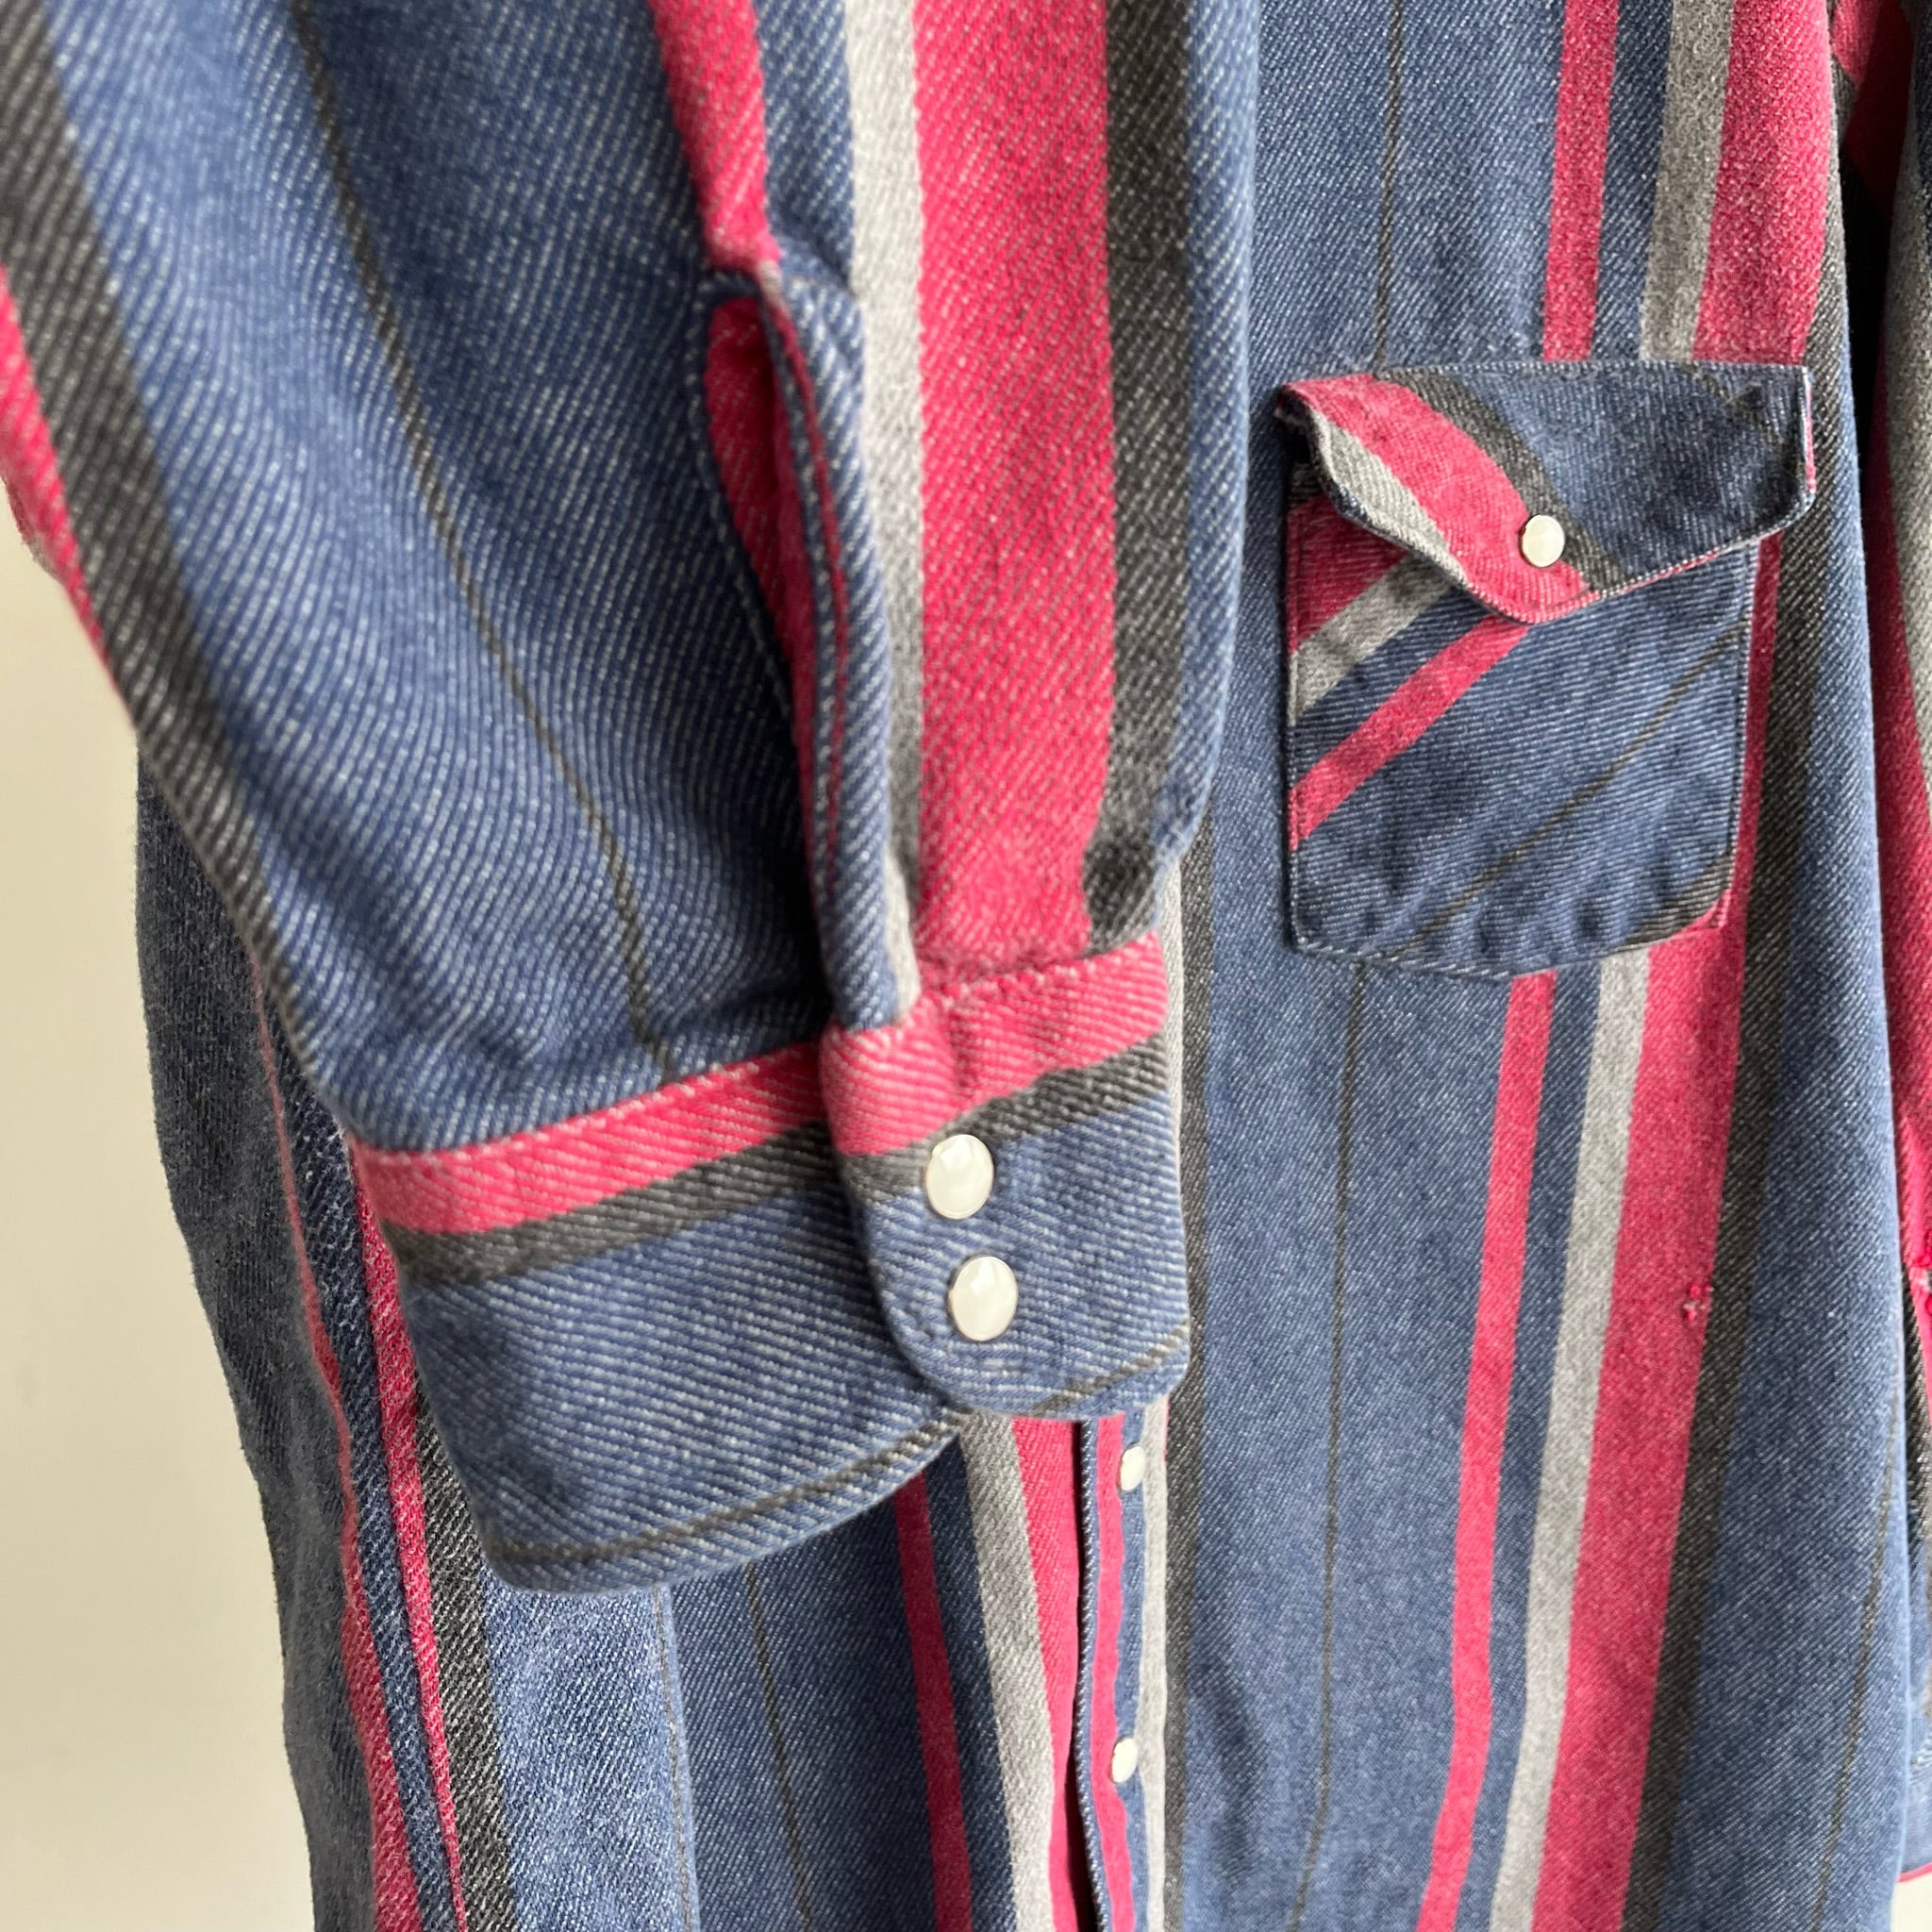 1990s Striped Dakota Western Snap Front Flannel